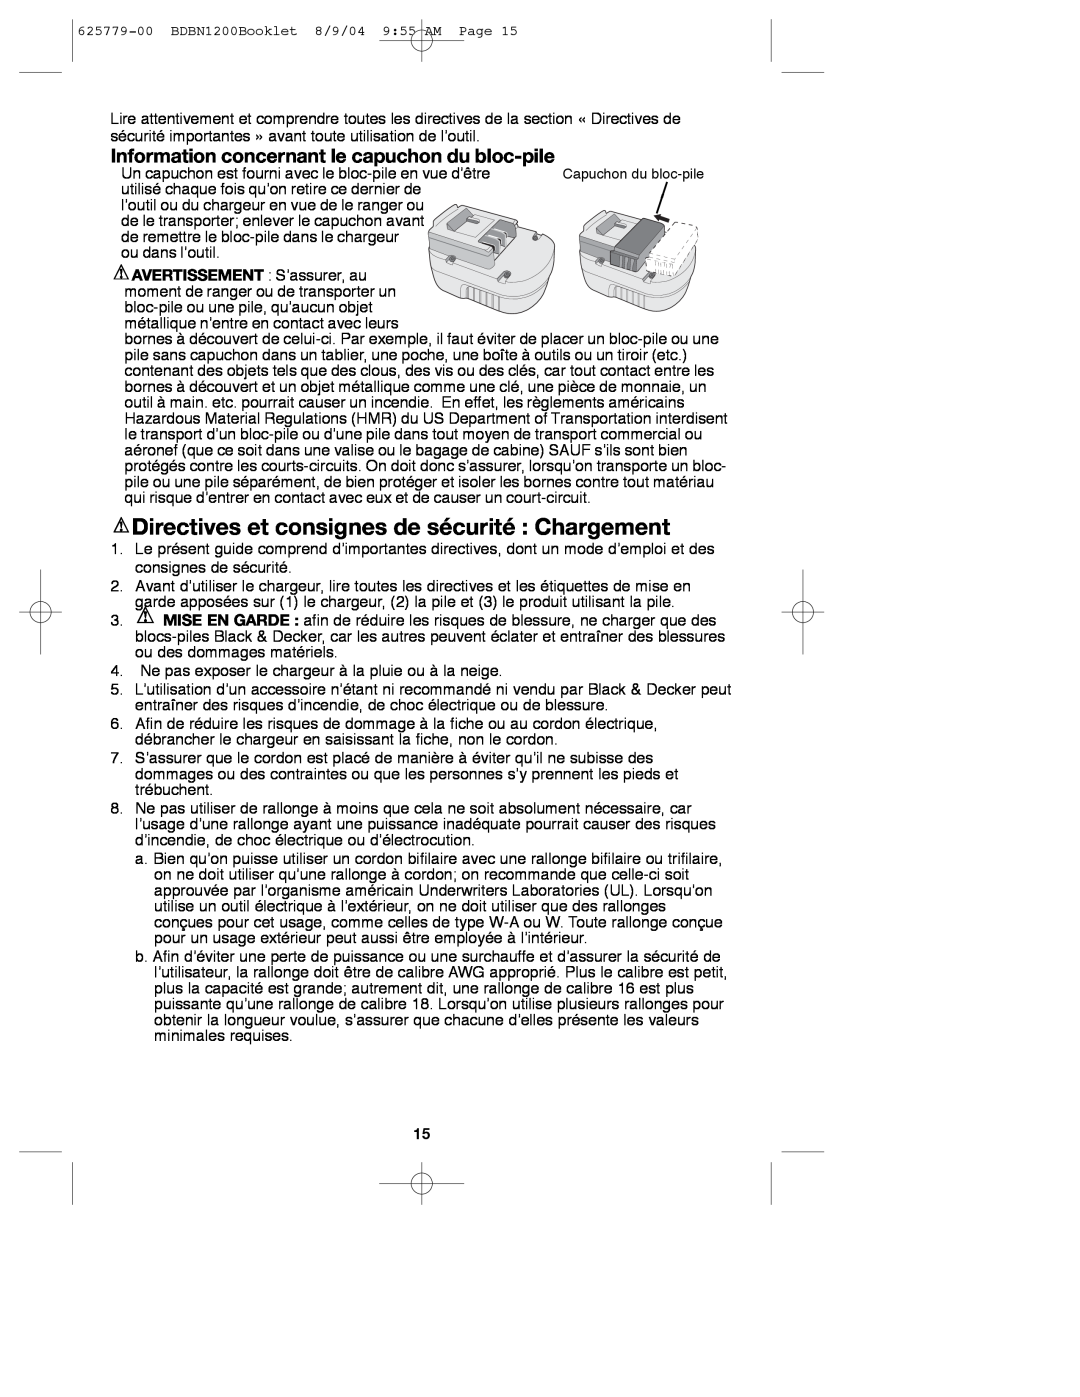 Black & Decker BDBN1200 Directives et consignes de sécurité Chargement, Information concernant le capuchon du bloc-pile 